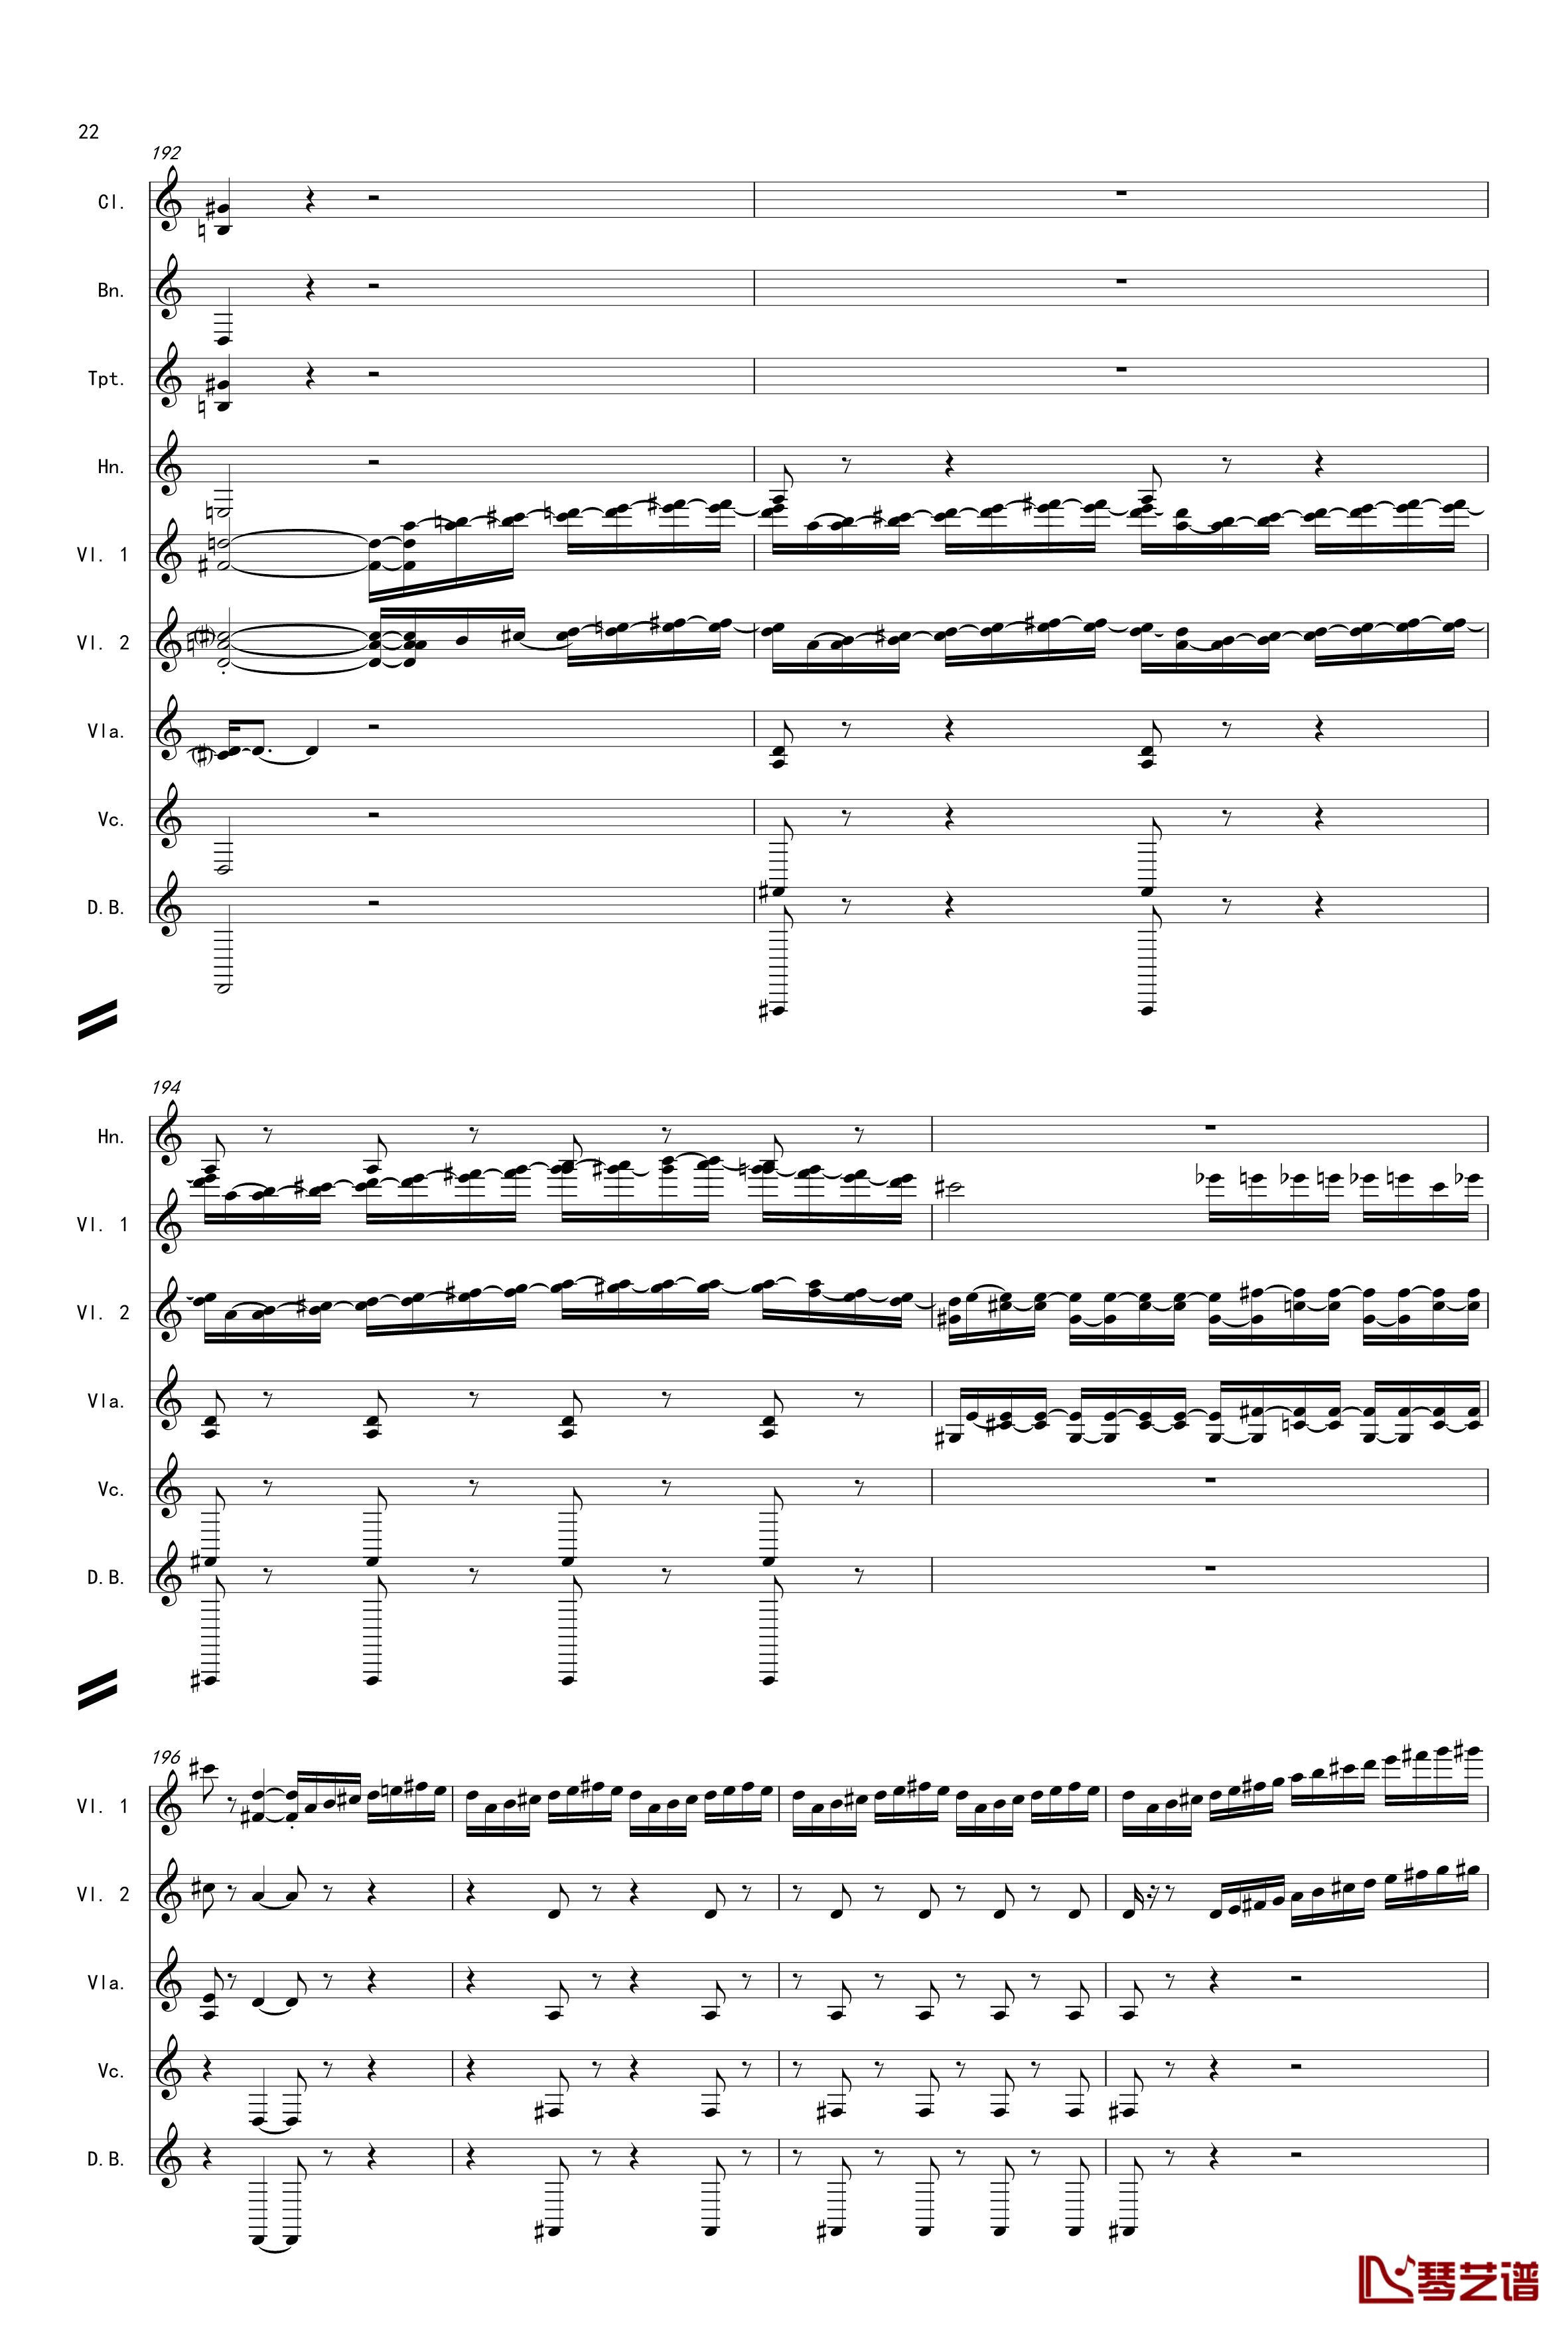 奏鸣曲之交响第14首Ⅲ钢琴谱-贝多芬-beethoven22